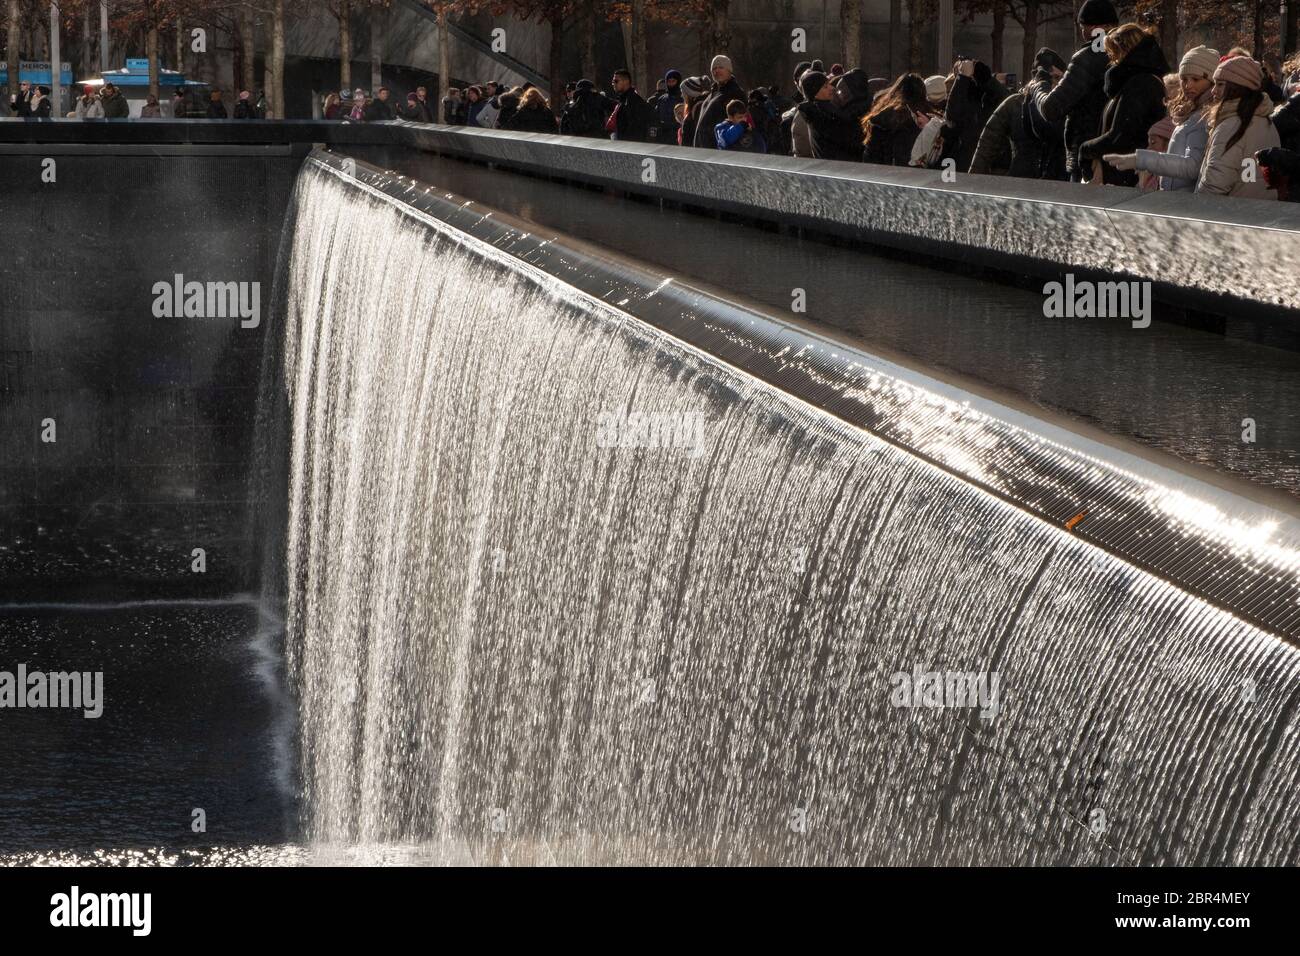 Il memoriale nazionale del 11 settembre a New York City commemorando gli attacchi del 11 settembre 2001, che hanno ucciso 2,977 persone. Progettato da Michael Arad. Foto Stock